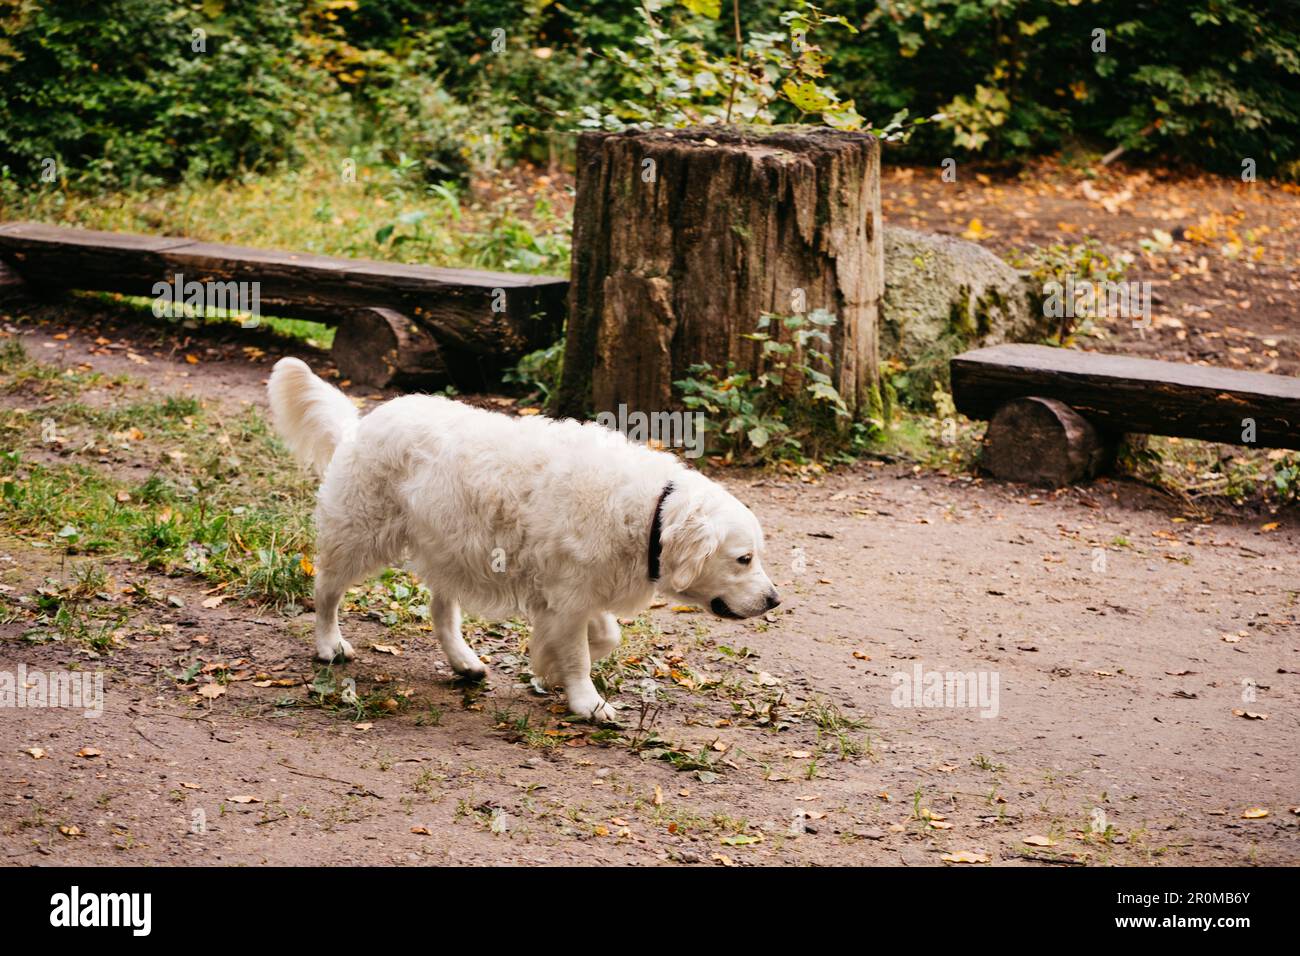 Polacco Tatra Sheepdog per una passeggiata nel parco. Un modello di ruolo nella sua razza. Conosciuto anche come Podhalan o Ovvarek Podhalansky. Foto Stock